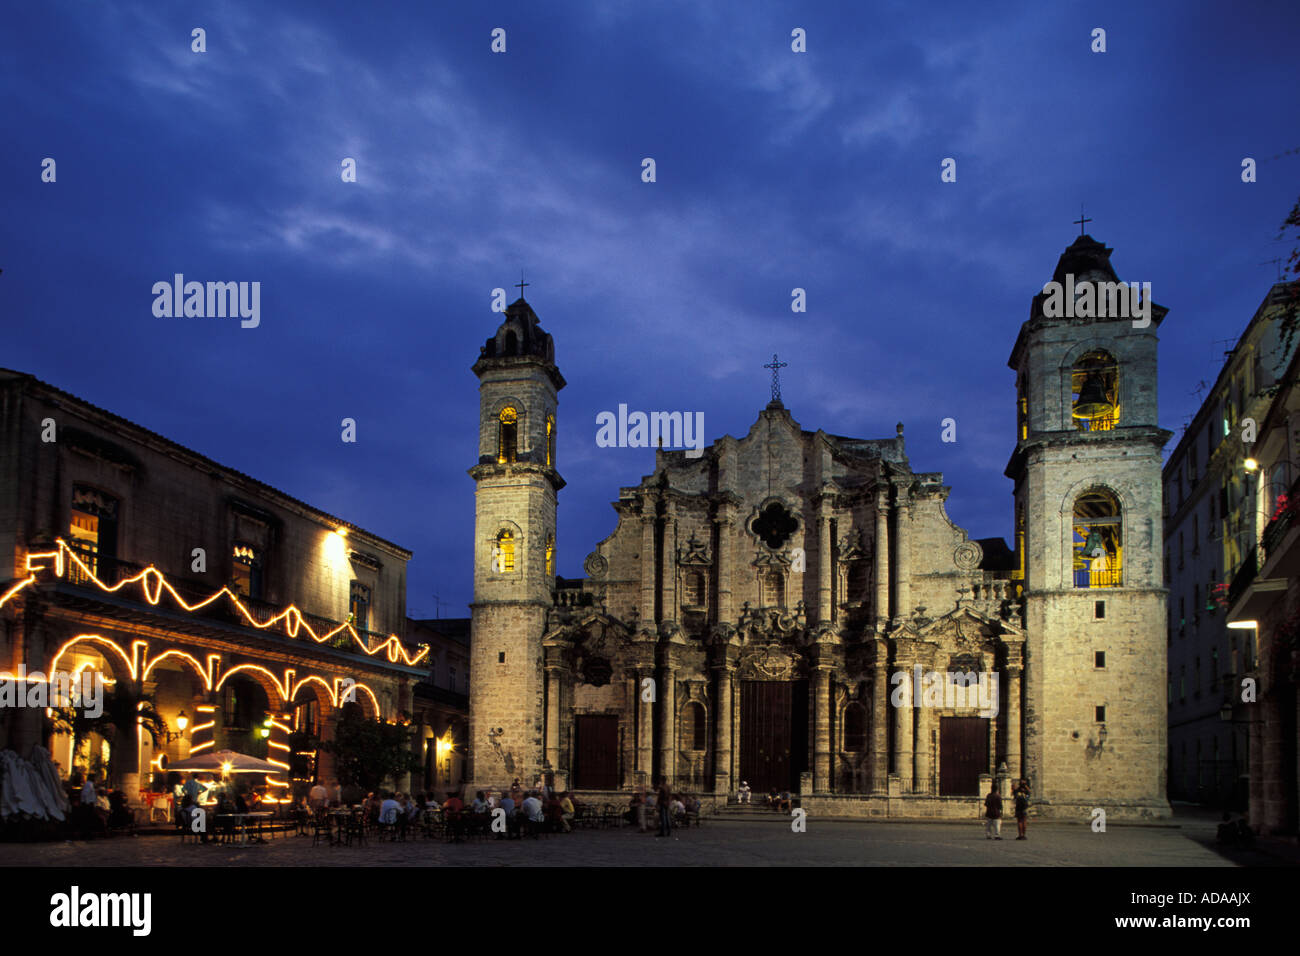 Illumiated La cathédrale de San Cristobal, la nuit la vieille Havane Cuba Caraïbes Banque D'Images